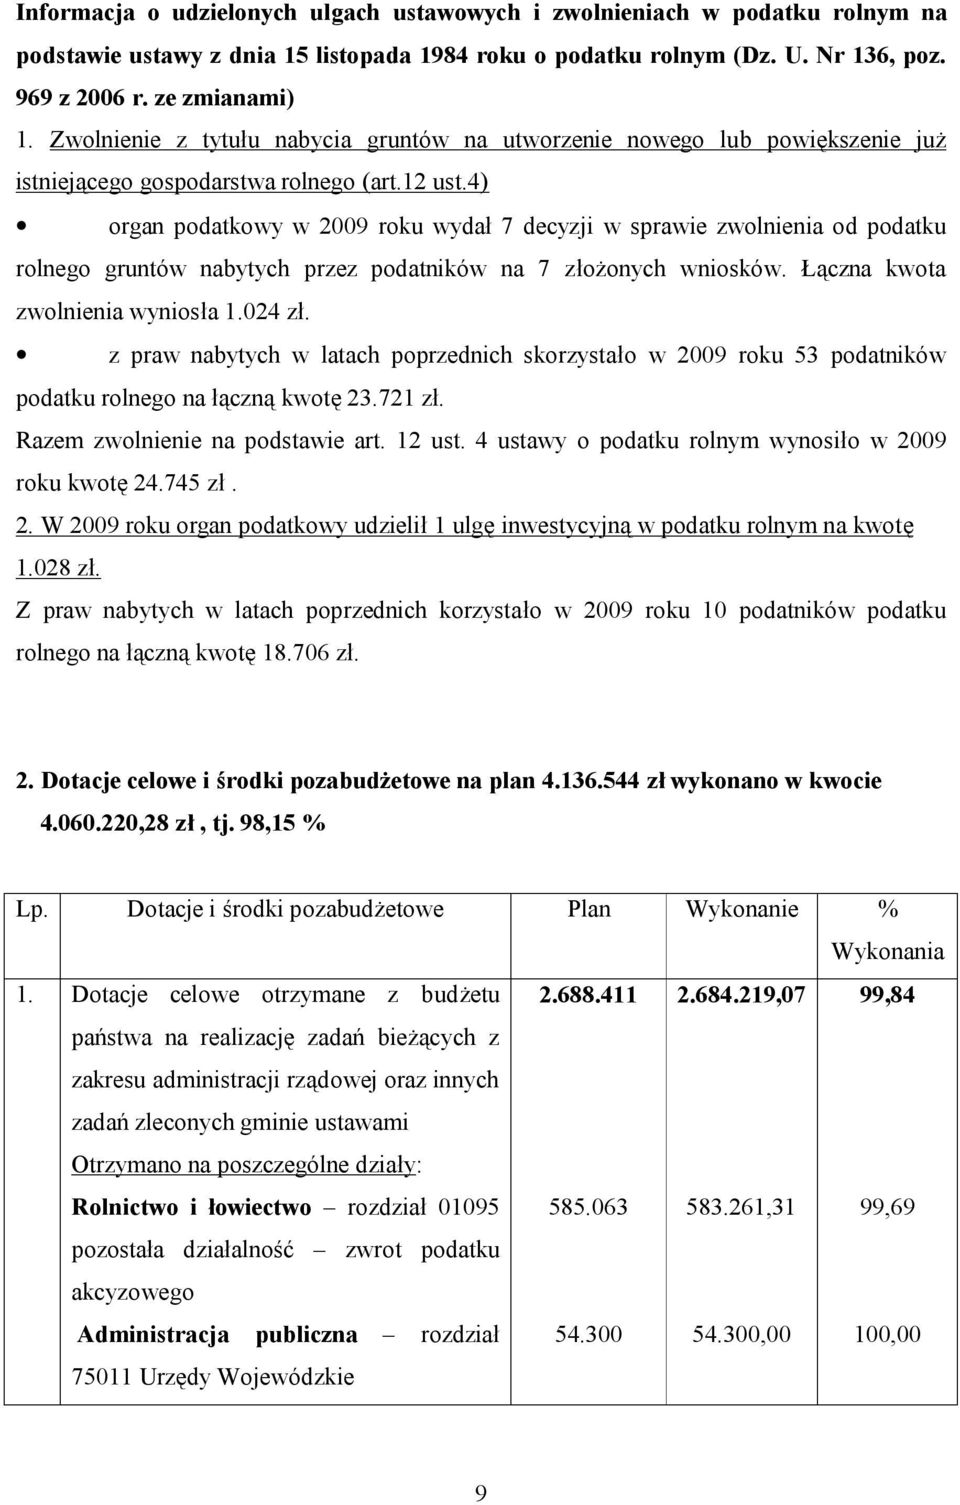 4) organ podatkowy w 2009 roku wydał 7 decyzji w sprawie zwolnienia od podatku rolnego gruntów nabytych przez podatników na 7 złożonych wniosków. Łączna kwota zwolnienia wyniosła 1.024 zł.